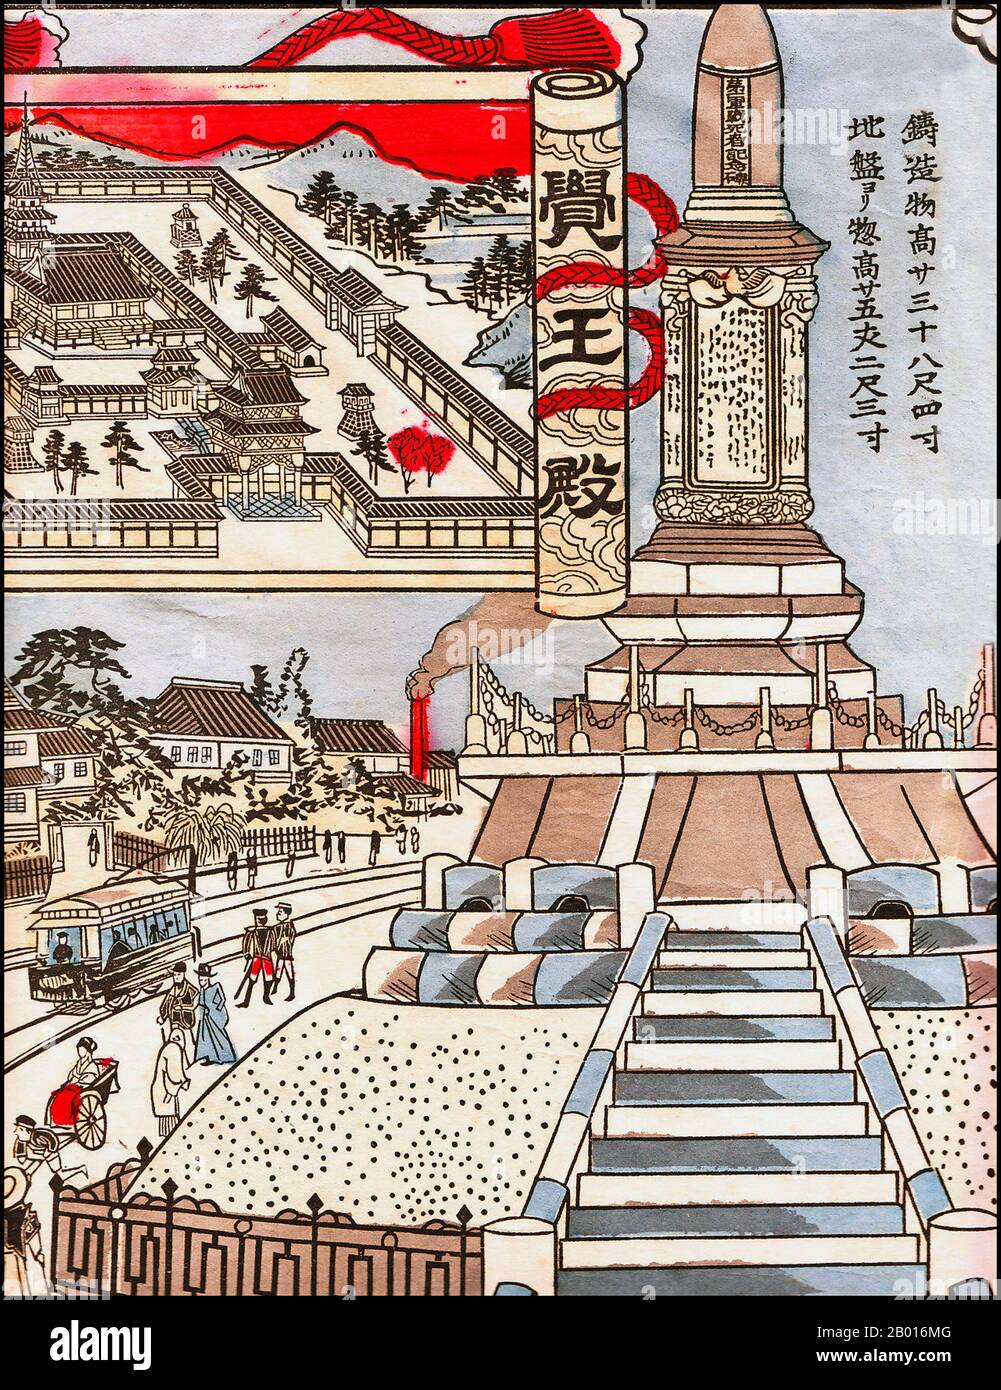 Japon : « Monument commémoratif de la première guerre sino-japonaise (1894 – 1895), Nagoya ».Imprimé bois Ukiyo-e, 1903.La première guerre sino-japonaise (1er août 1894 - 17 avril 1895) a été menée entre la Chine de la dynastie Qing et le Japon de Meiji, principalement sur le contrôle de la Corée.Après plus de six mois de succès continus de l'armée et des forces navales japonaises et la perte du port chinois de Weihaiwei, les dirigeants de Qing ont poursuivi en faveur de la paix en février 1895. Banque D'Images